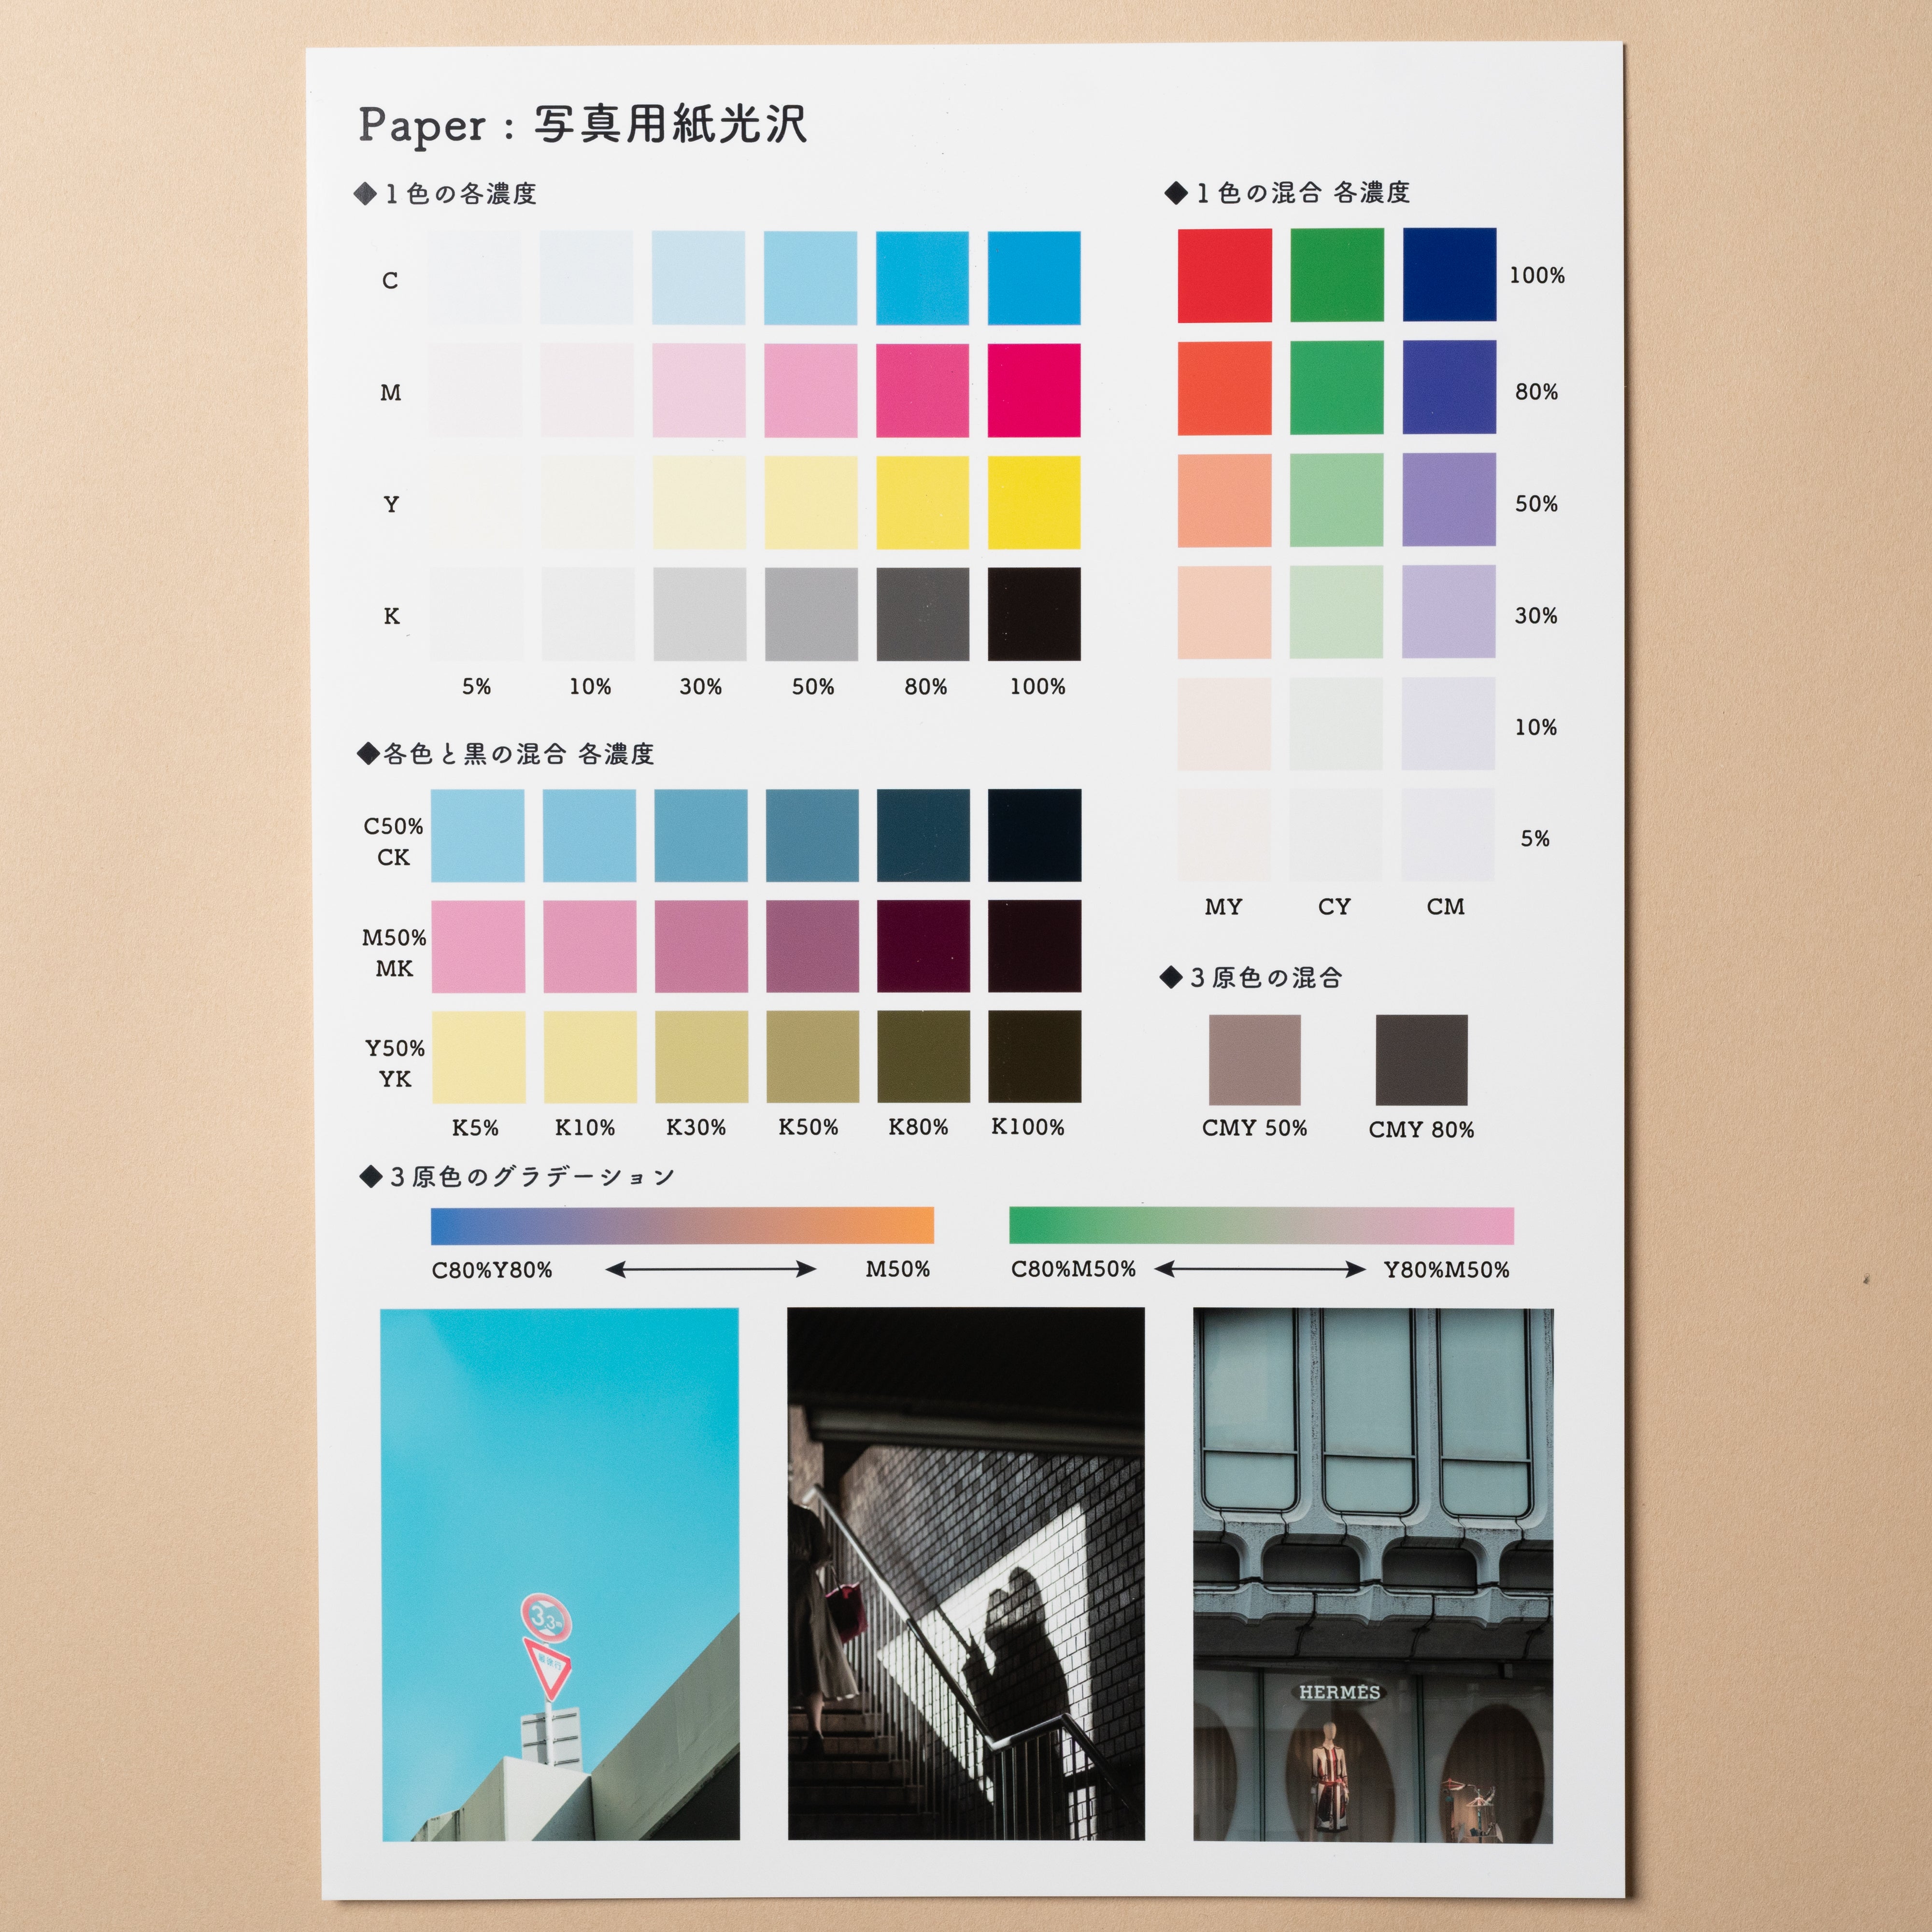 EPSON】写真用紙光沢 – イーワン大判プリント【最大B0サイズの大判印刷